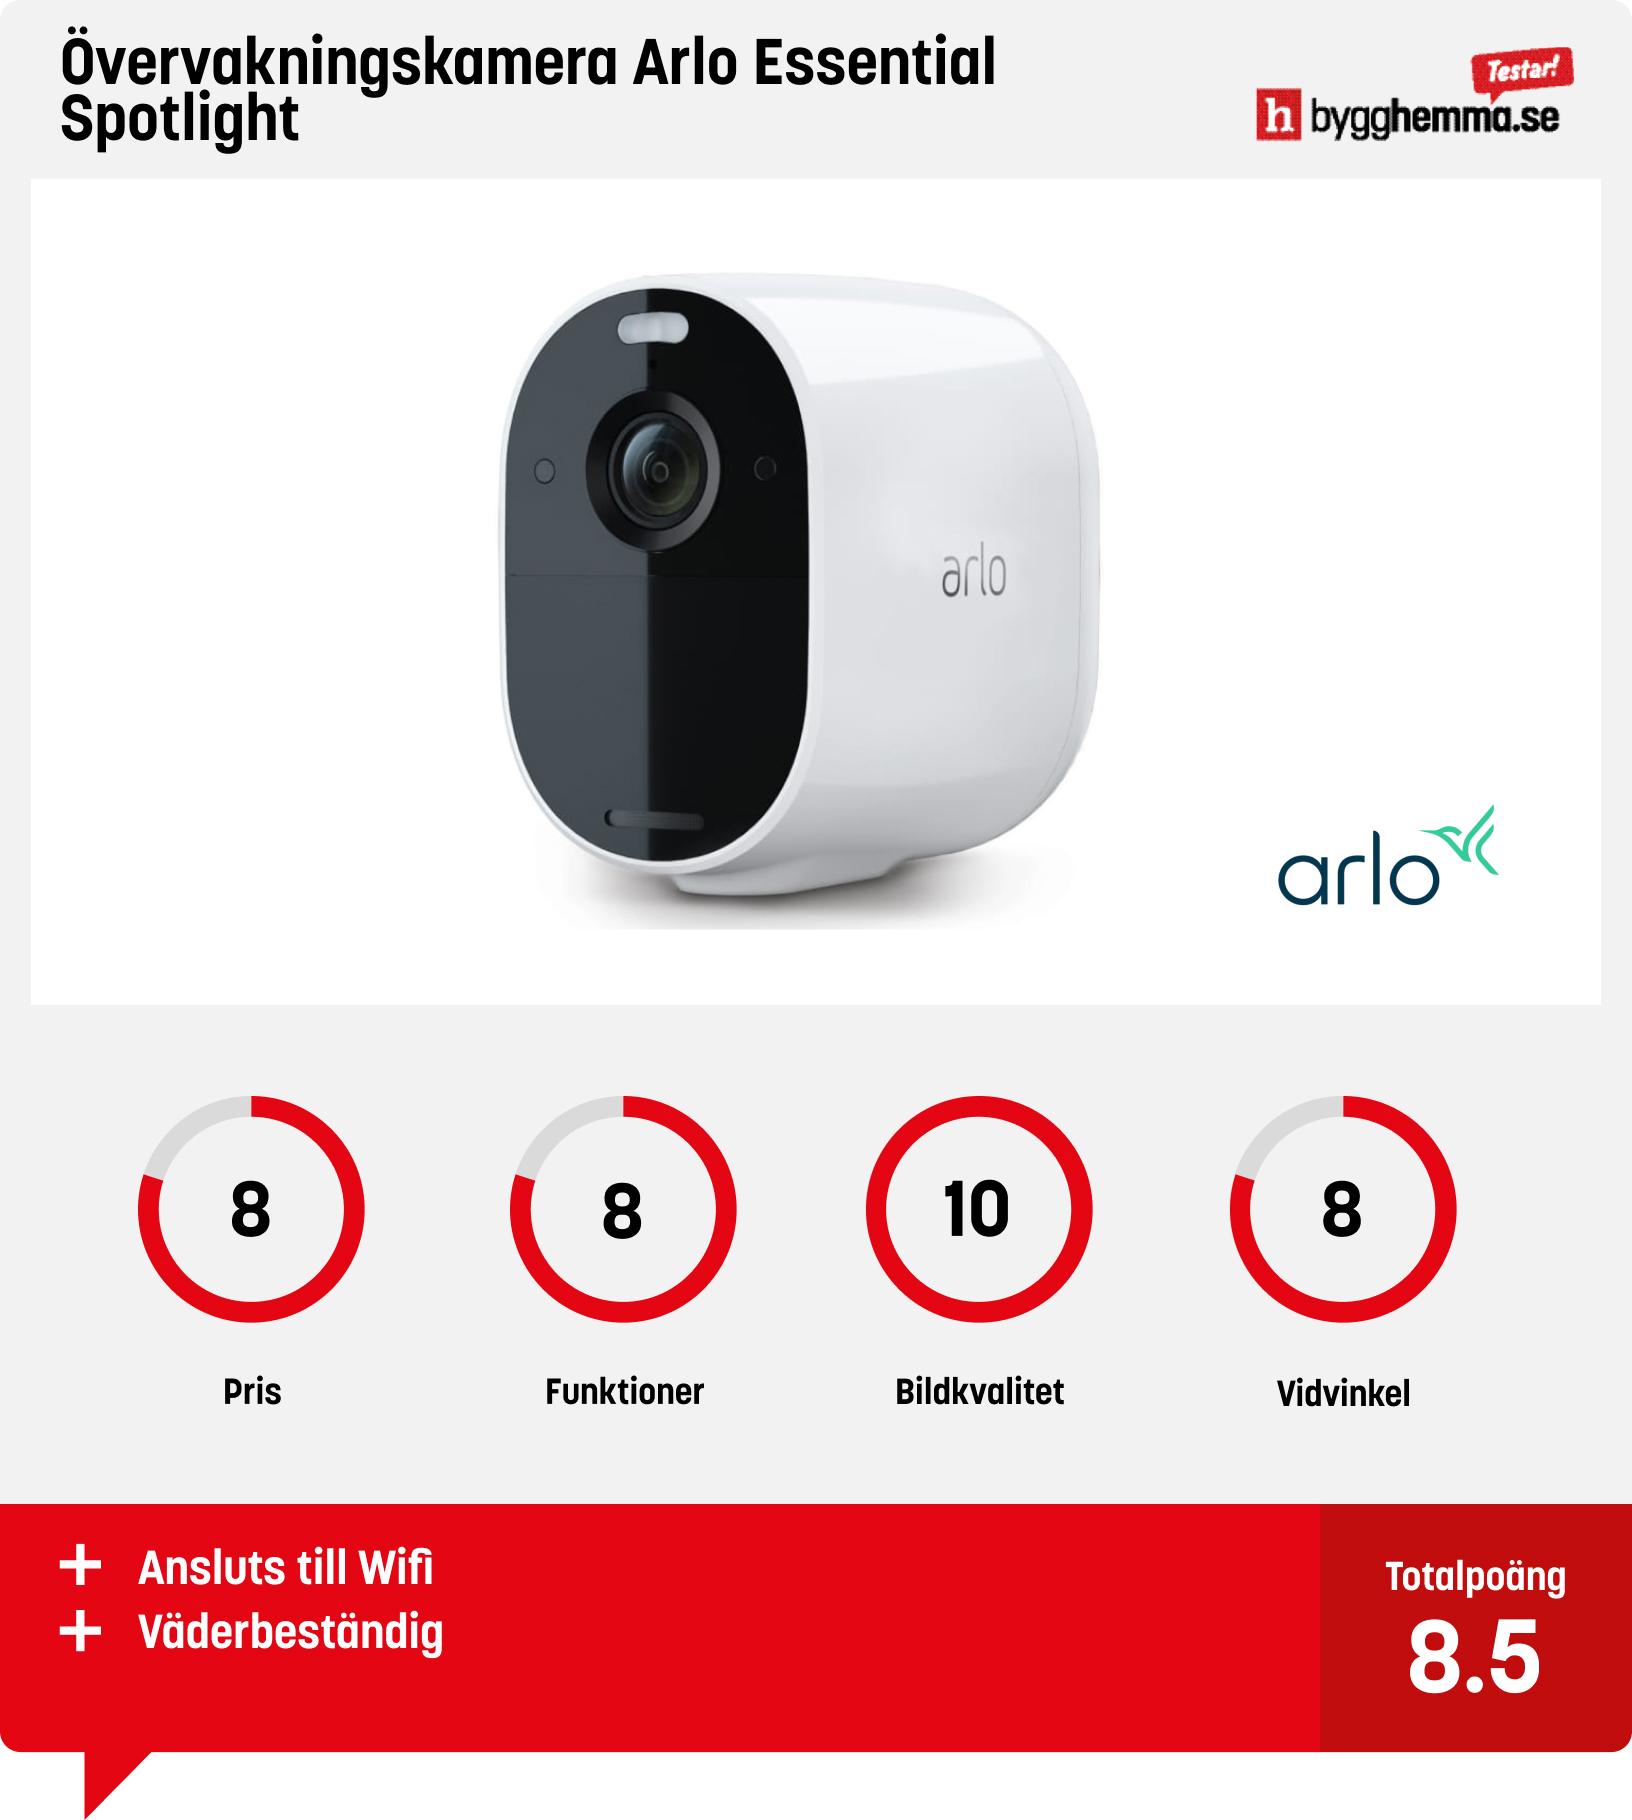 Övervakningskamera bäst i test - Övervakningskamera Arlo Essential Spotlight